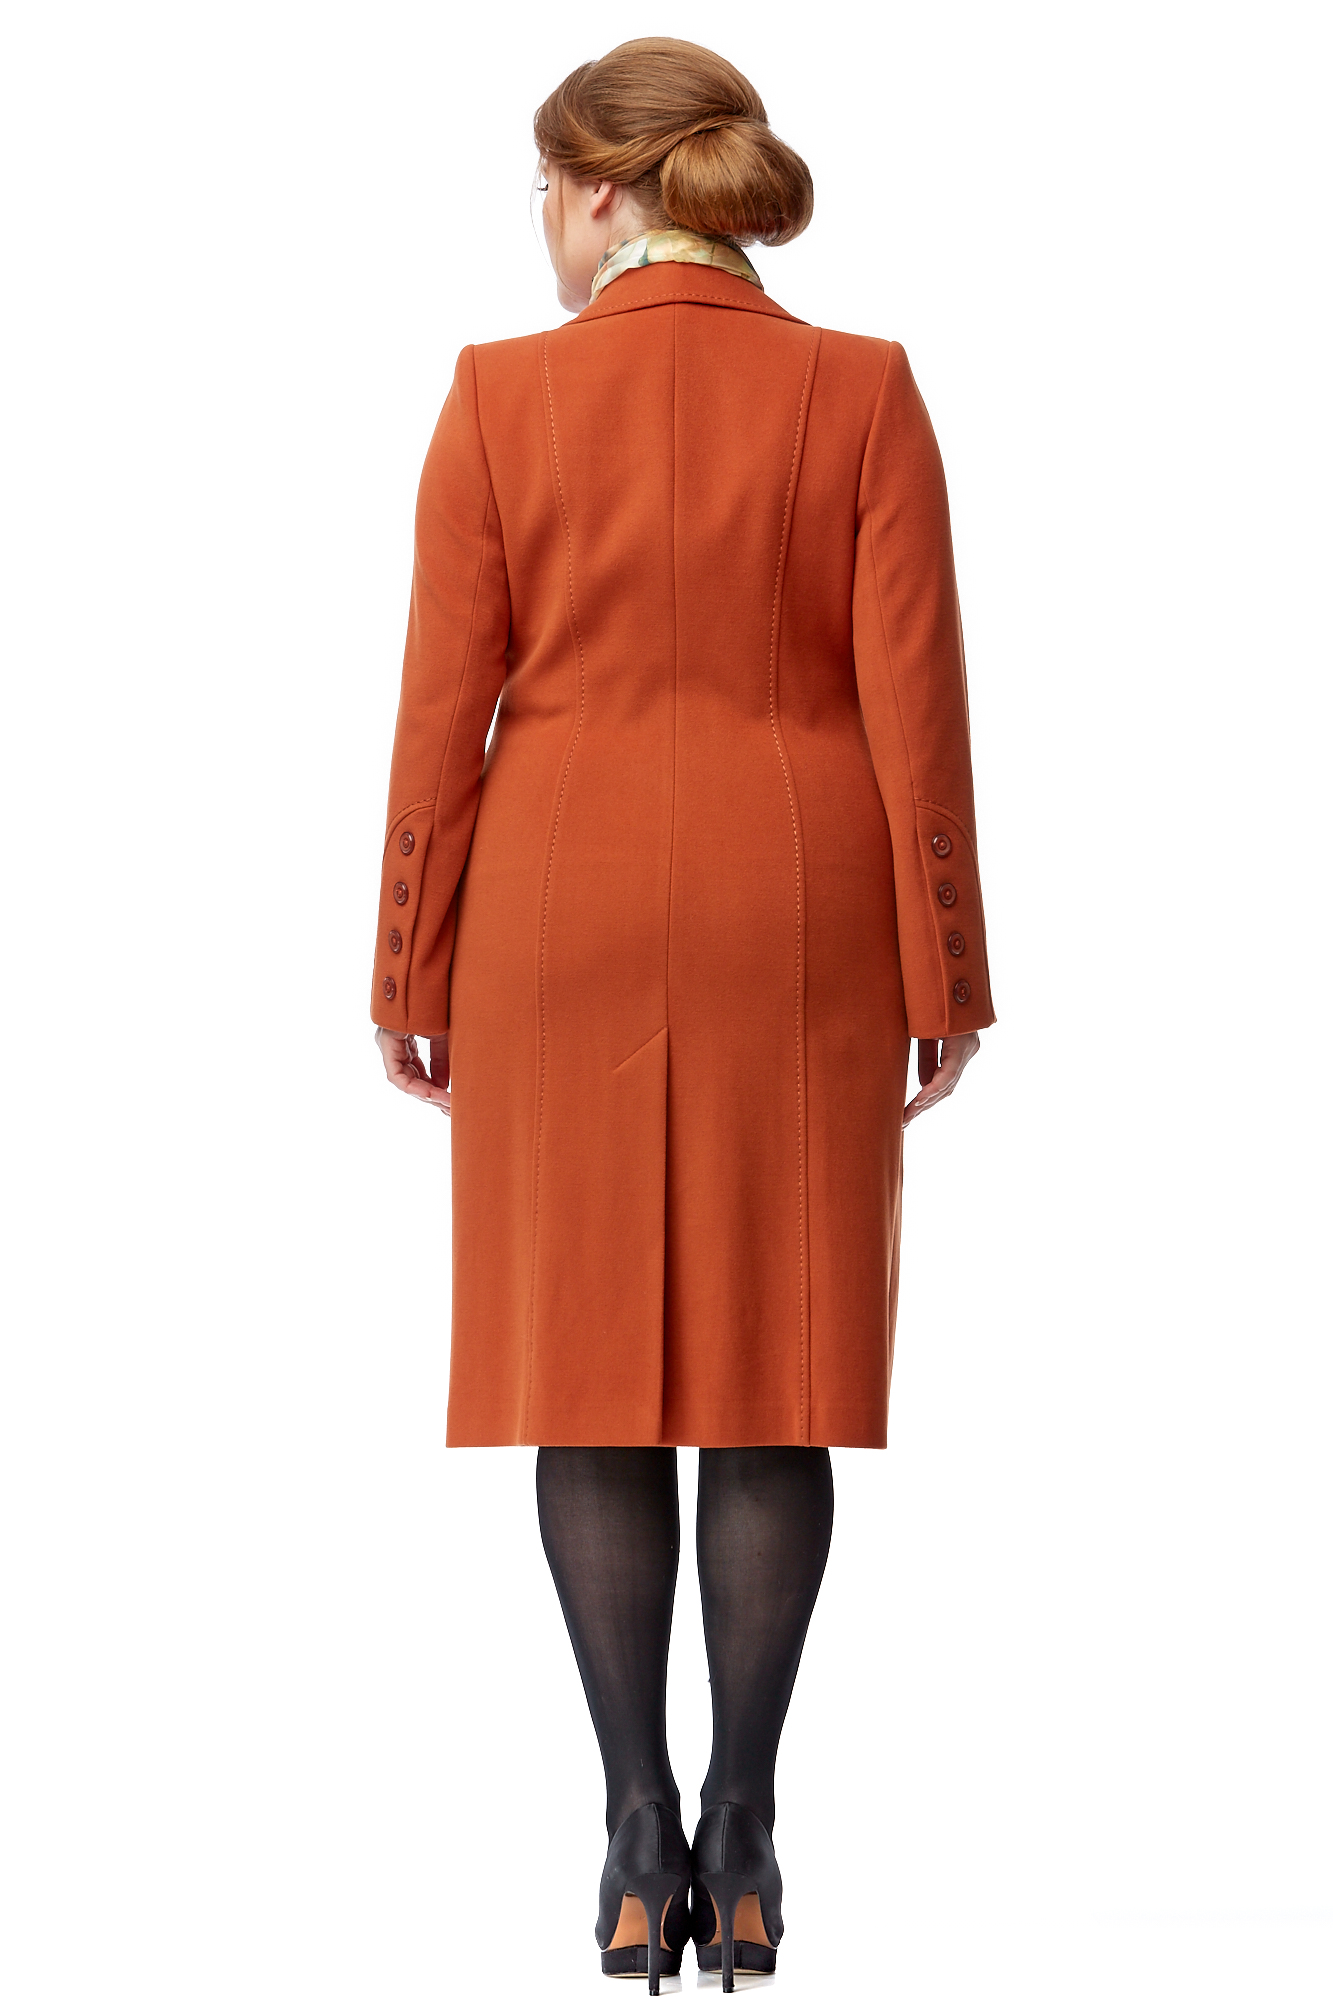 Женское пальто из текстиля с воротником 8002593-2